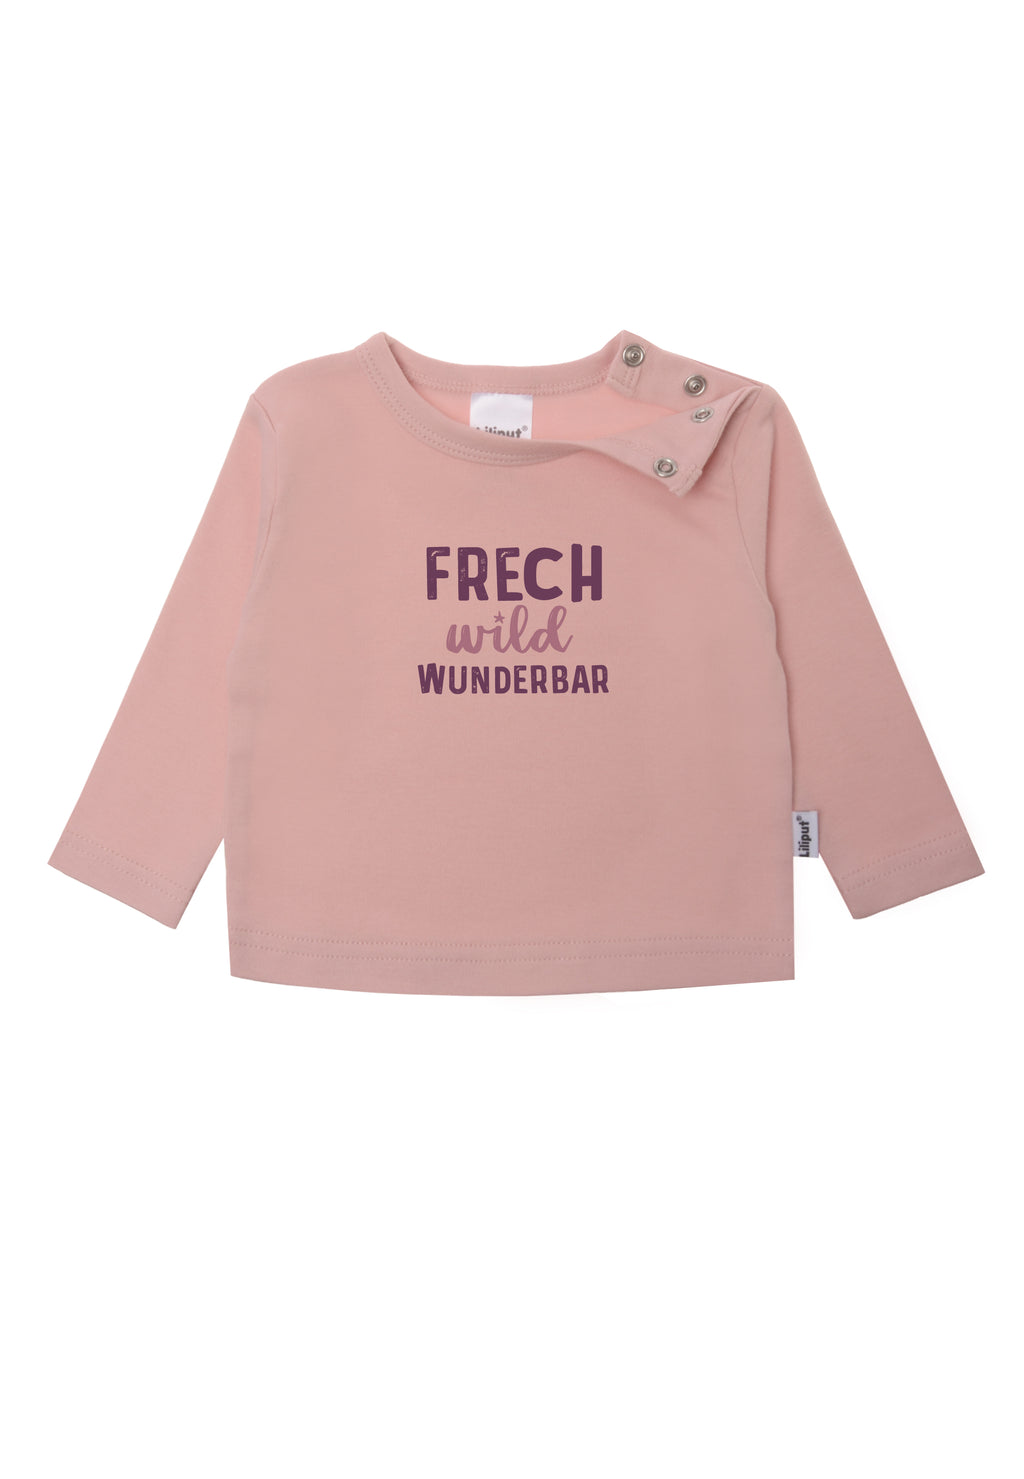 Langarmshirt in rosè mit Wording "frech, wild, wunderbar" für kleine freche Lieblingsmenschen.